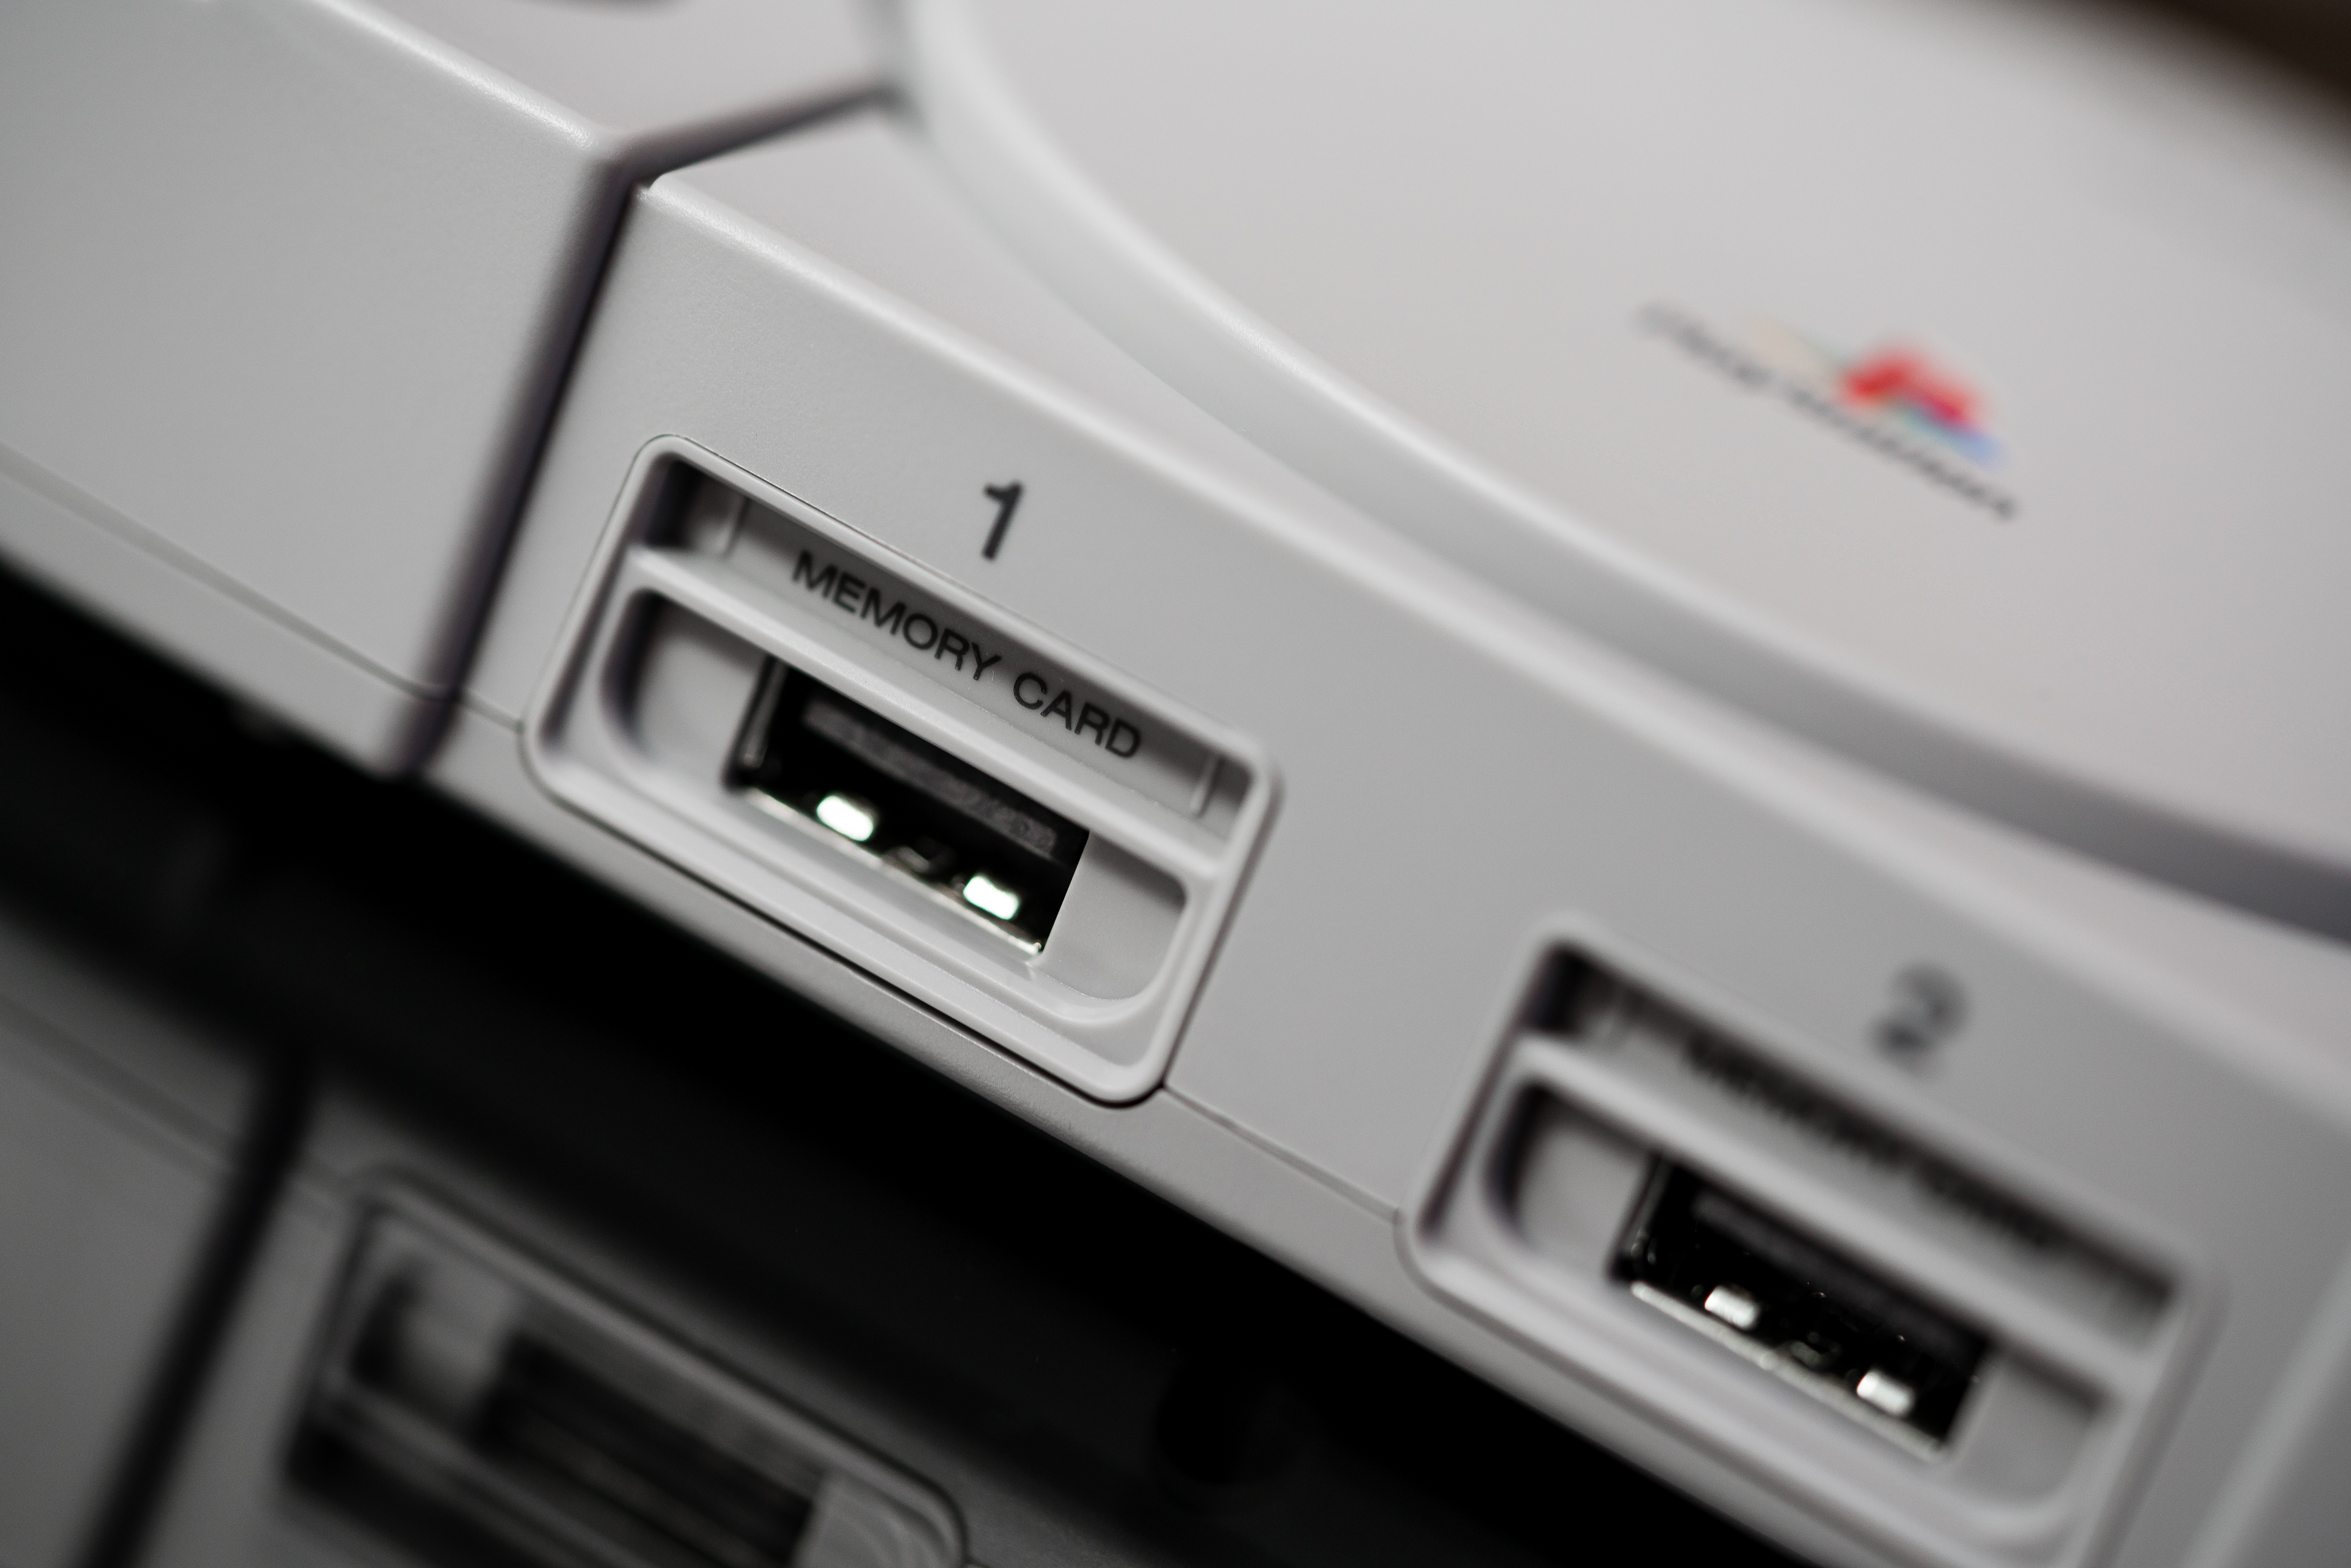 Сама консоль зроблена відмінно, навіть кнопка «Відкрити» залишилася, адже до PlayStation Classic додається кілька багатодисковим ігор, наприклад, Metal Gear Solid і Final Fantasy XV